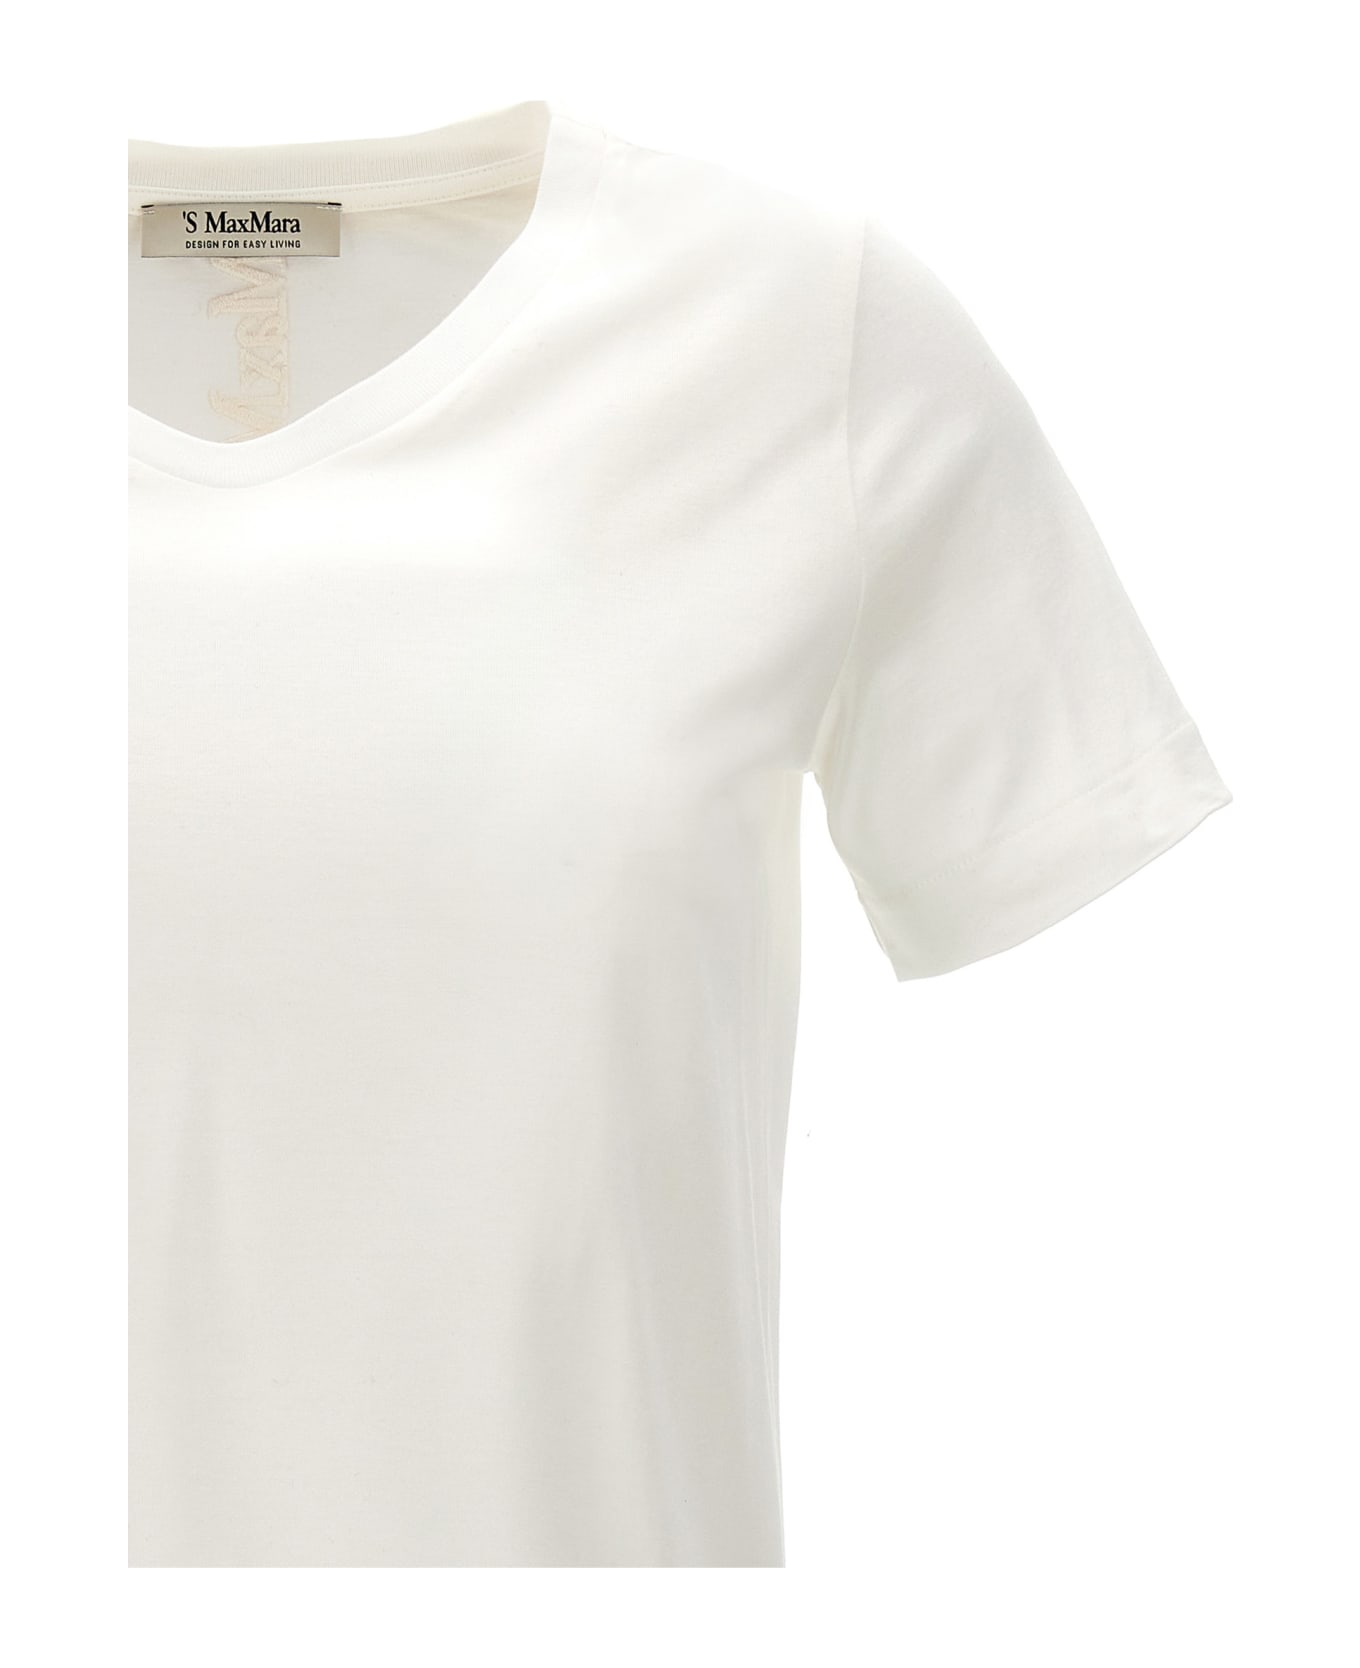 'S Max Mara 'quito' T-shirt - WHITE Tシャツ